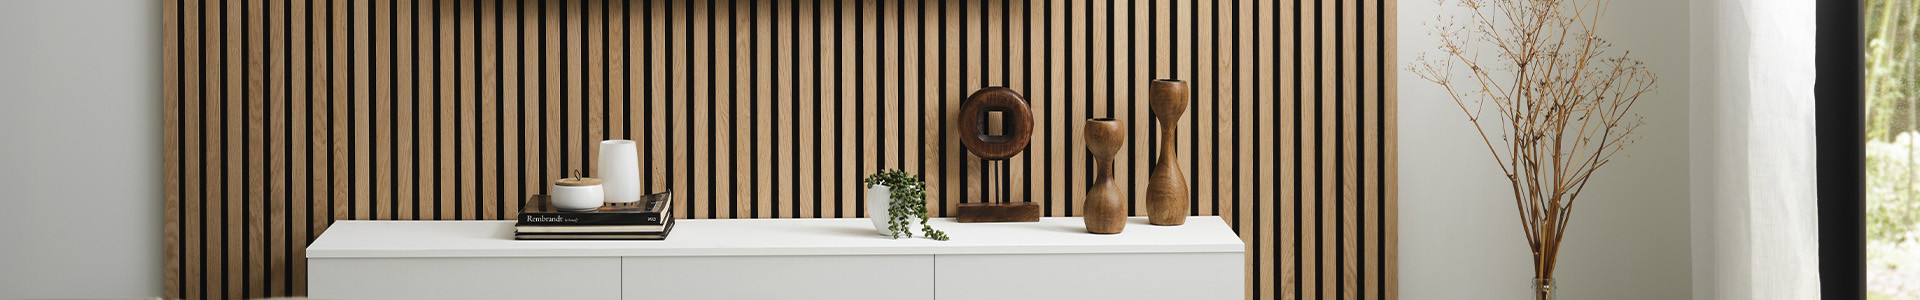 Wooden Slat Wall Panels on Felt Vertigo - ADIB